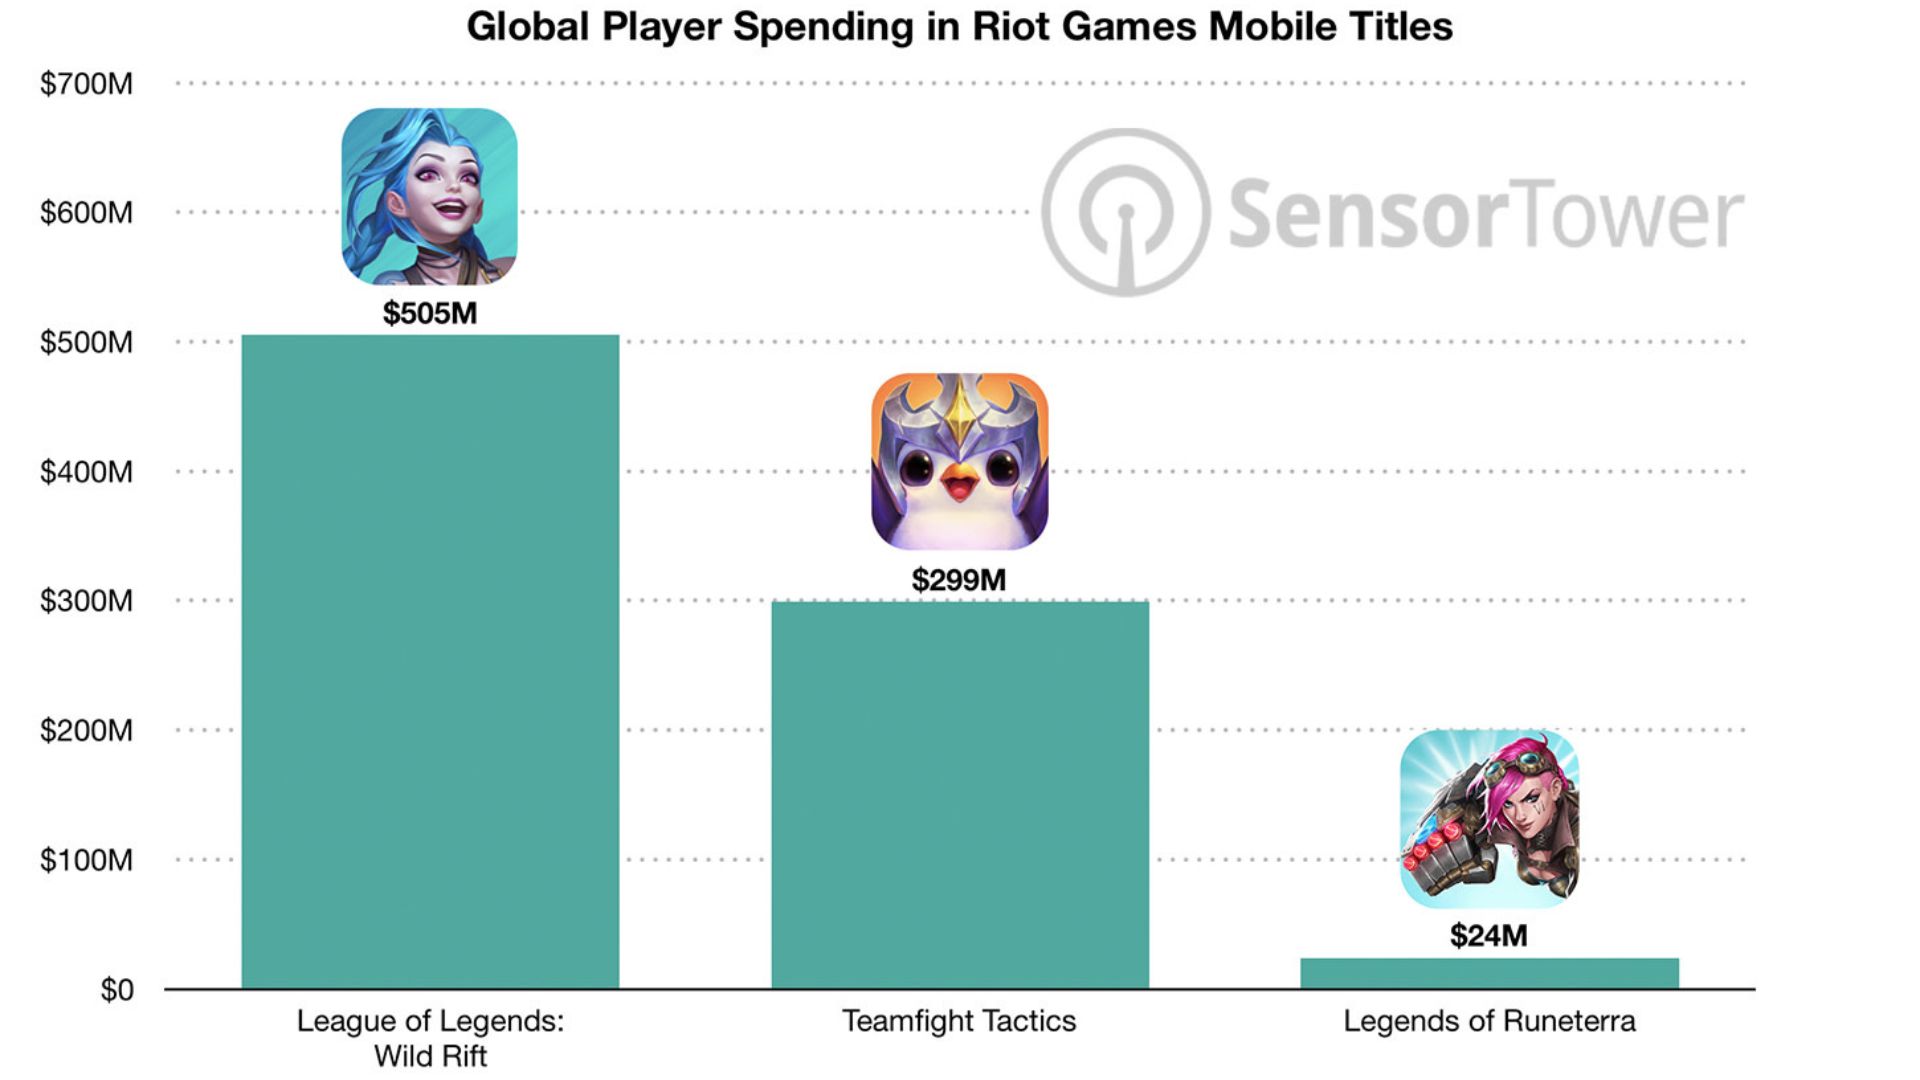 Conta Wild Rift Win rate bom - League of Legends: Wild Rift